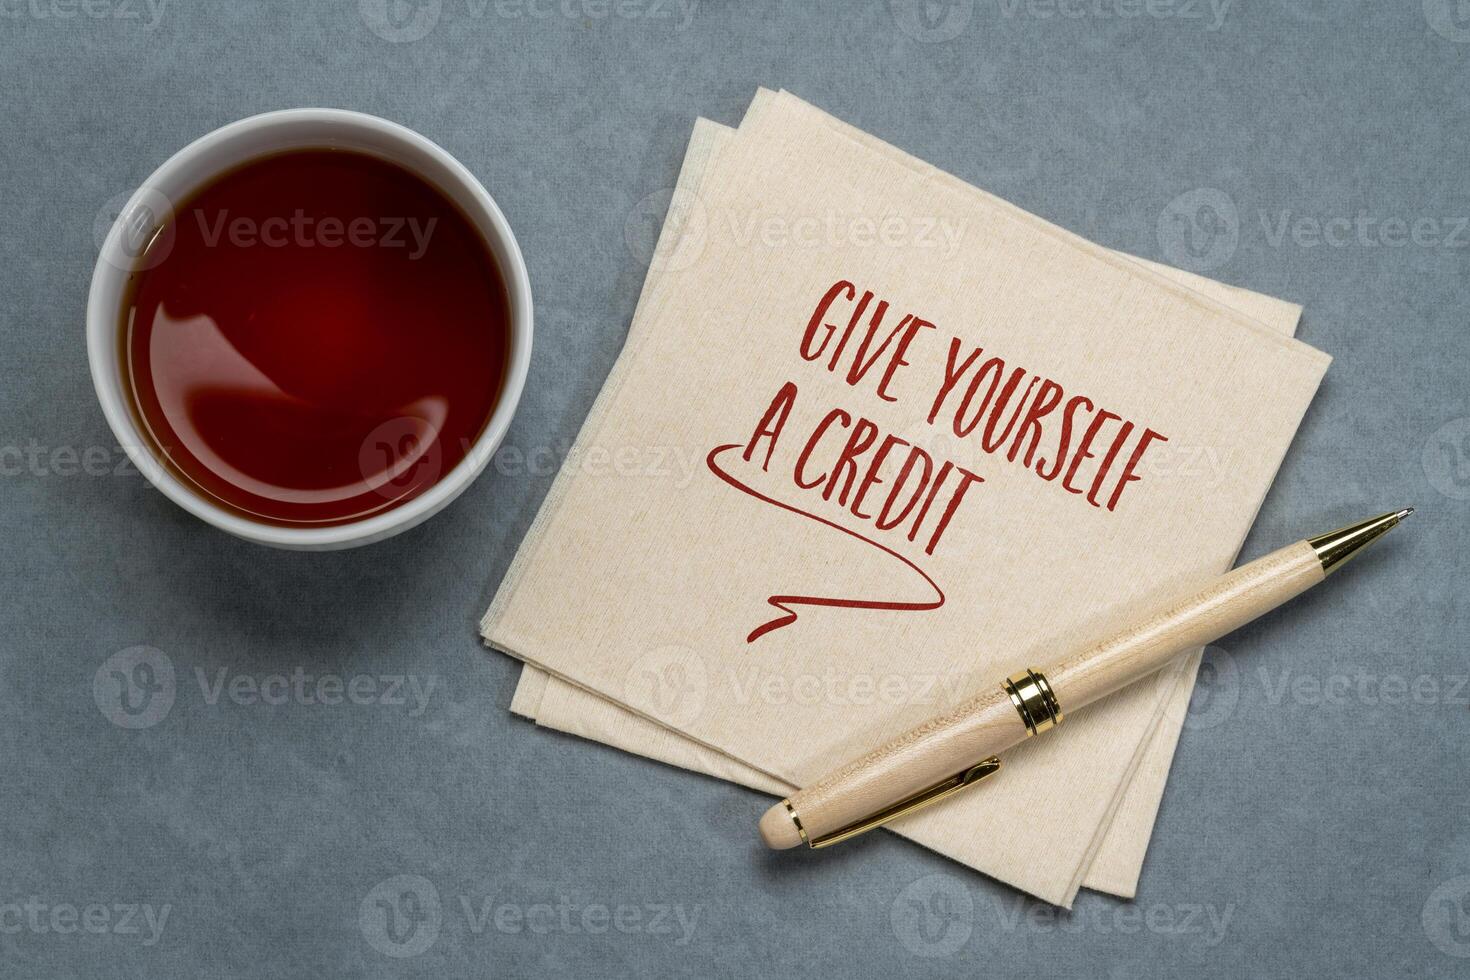 ge själv en kreditera, inspirera notera på servett, personlig utveckling begrepp foto